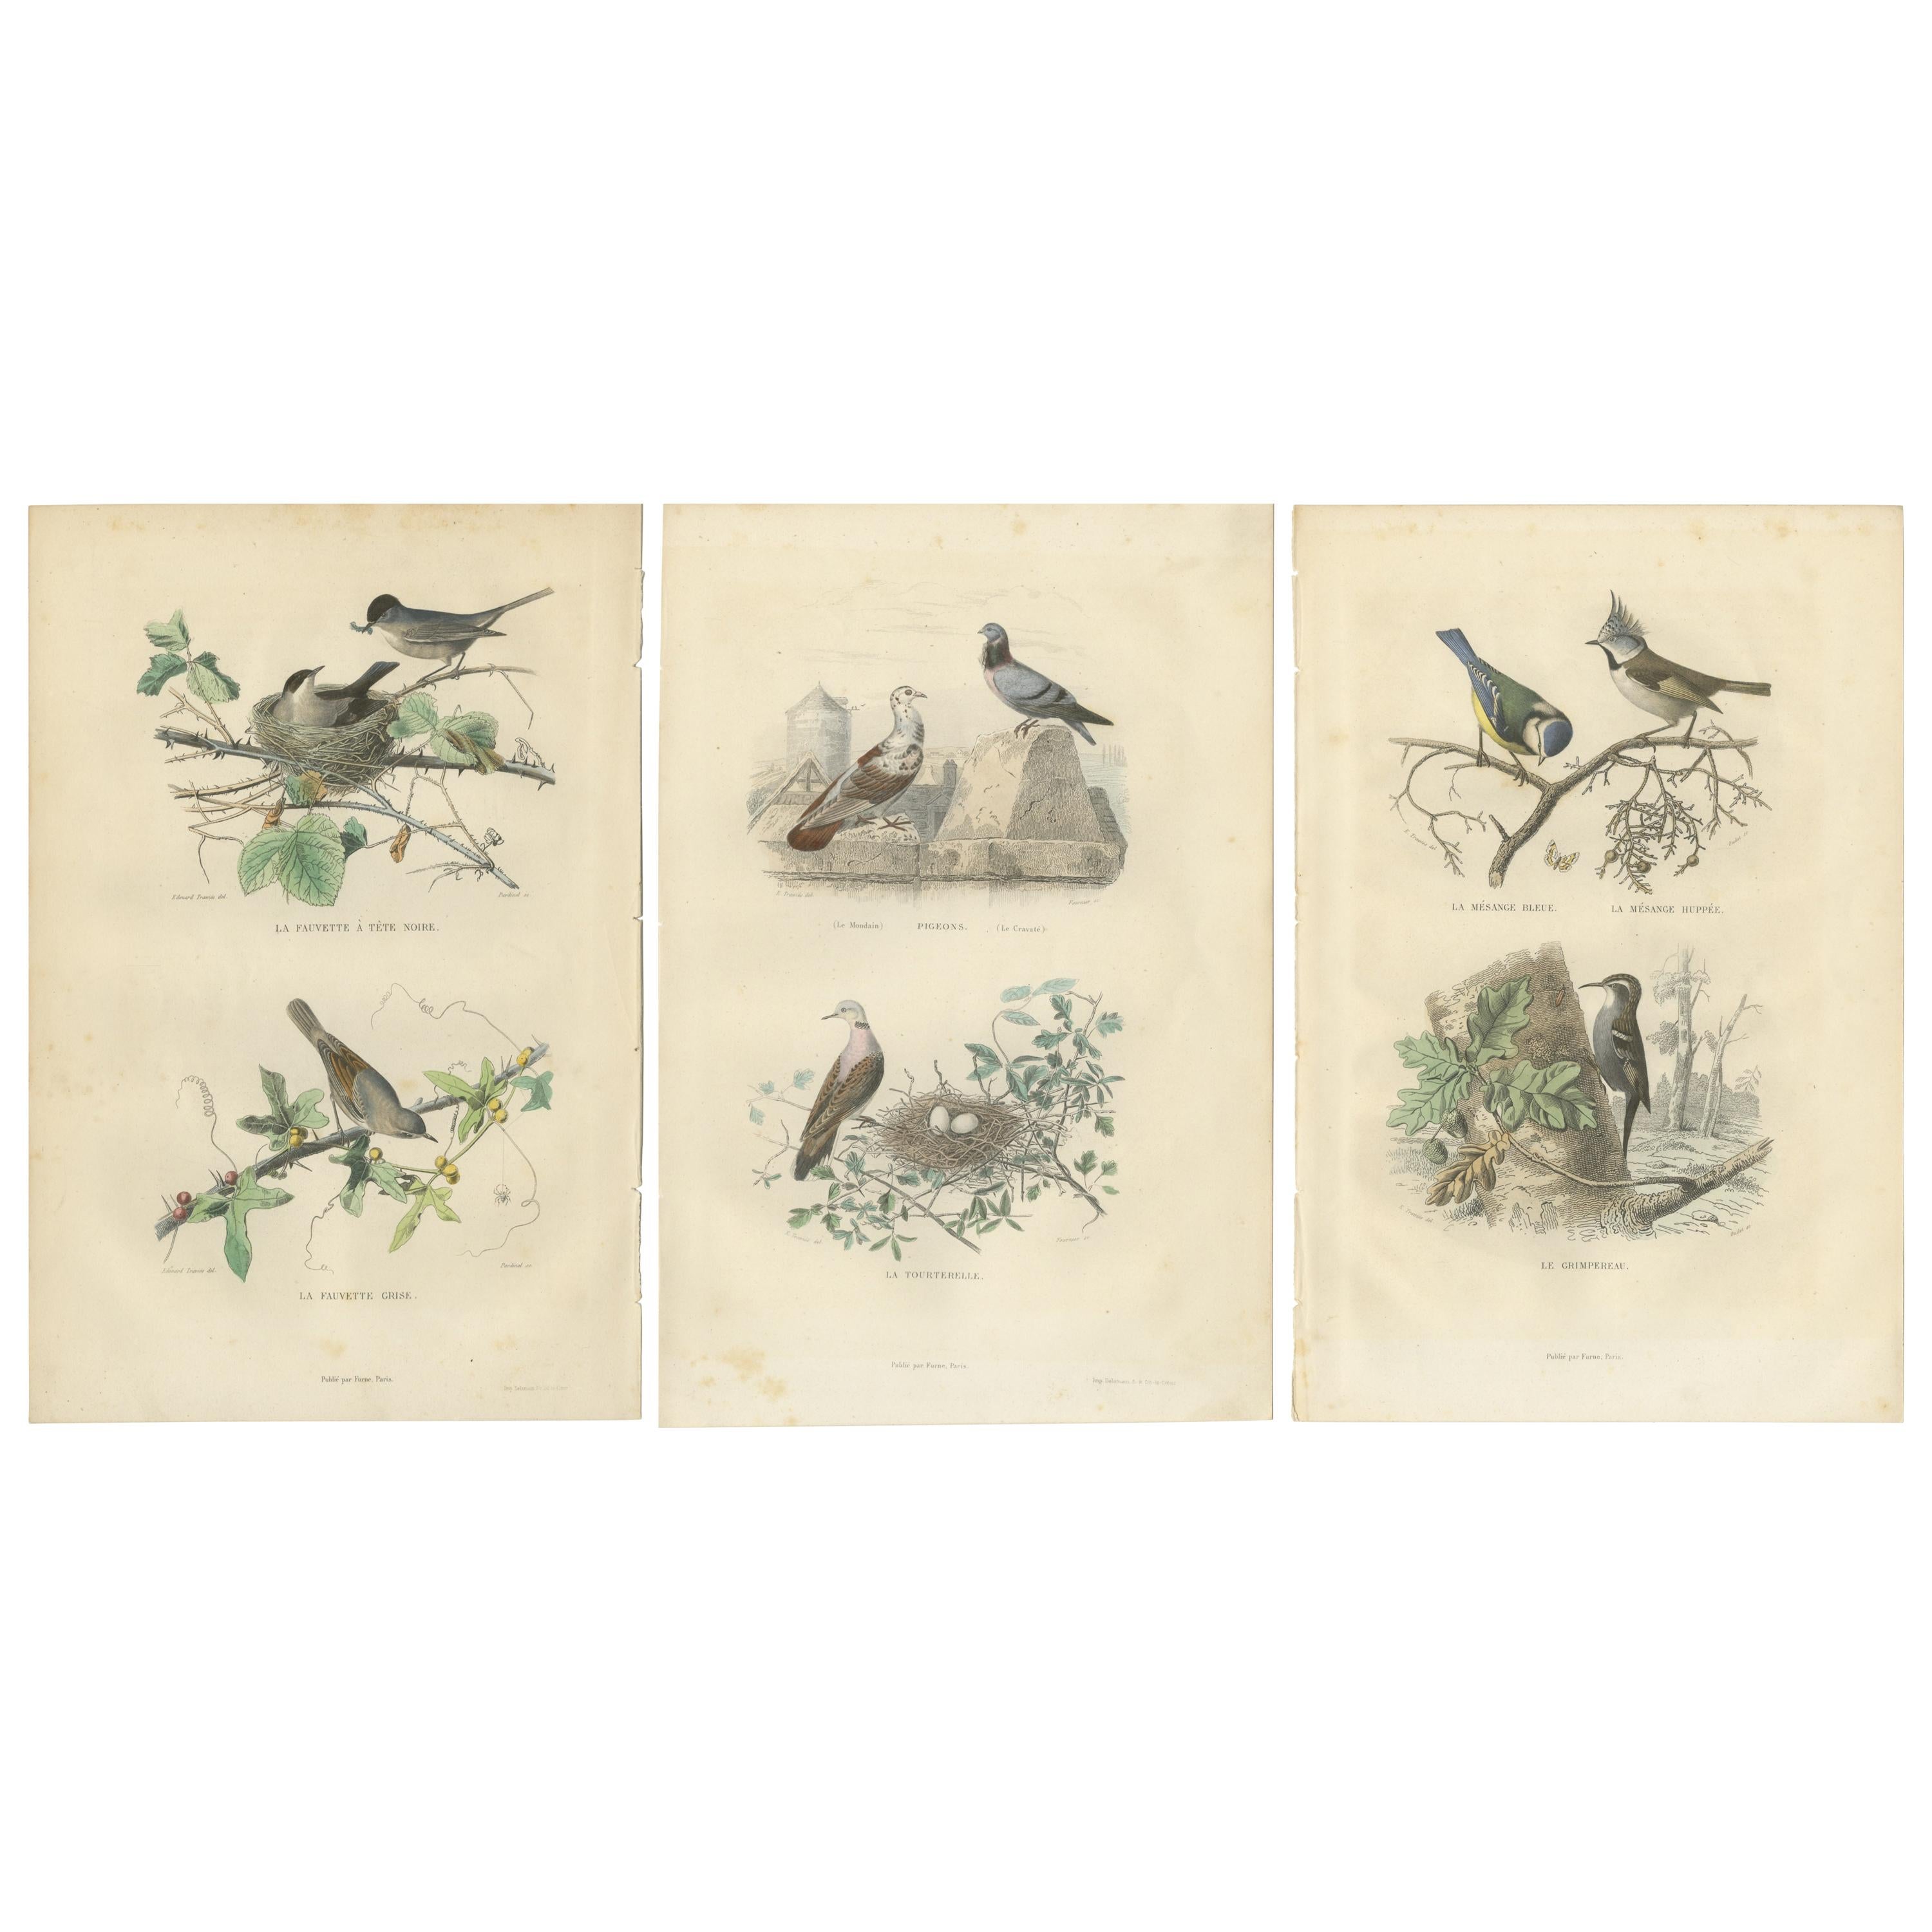 Satz von 3 antiken Vogeldrucken, Mönchsgrasmücke, Weißkehlchen, Turteltaube, um 1850